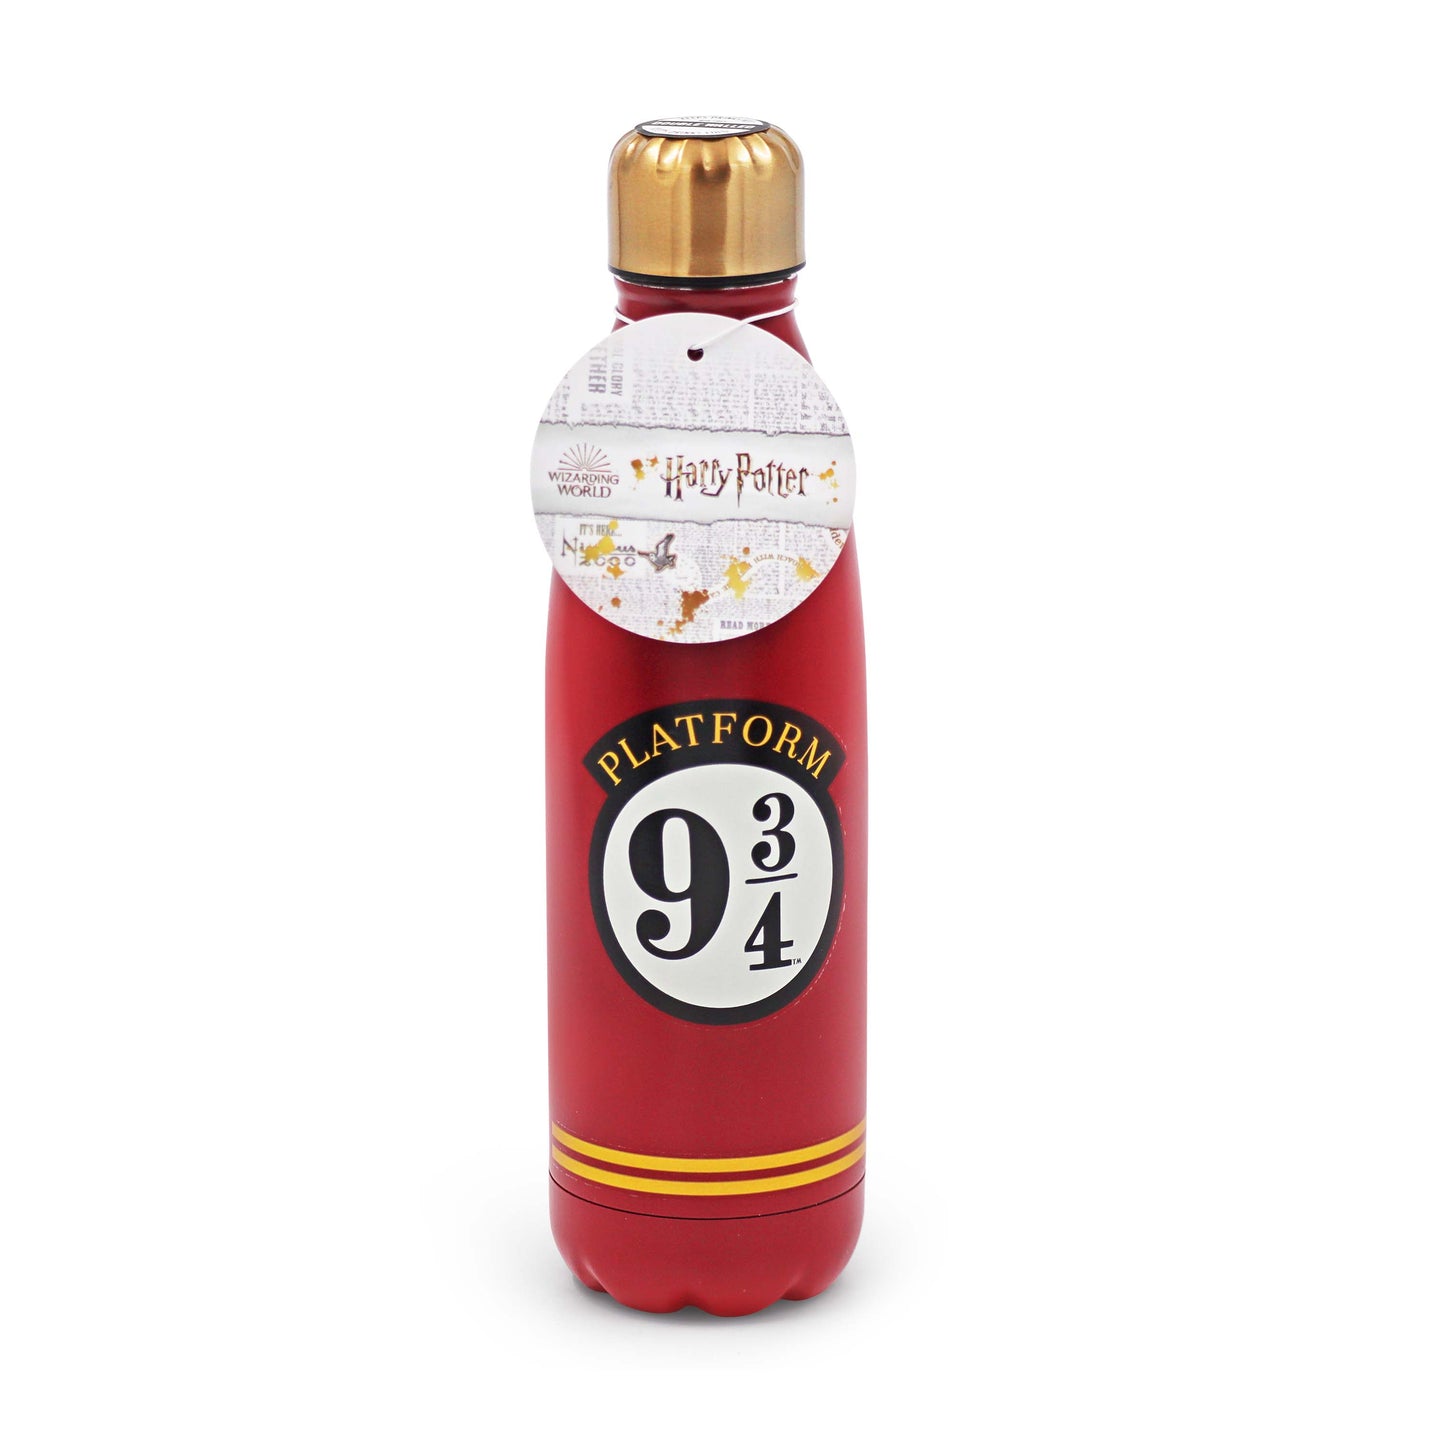 Platform 9/34 Harry Potter Insulated bottle